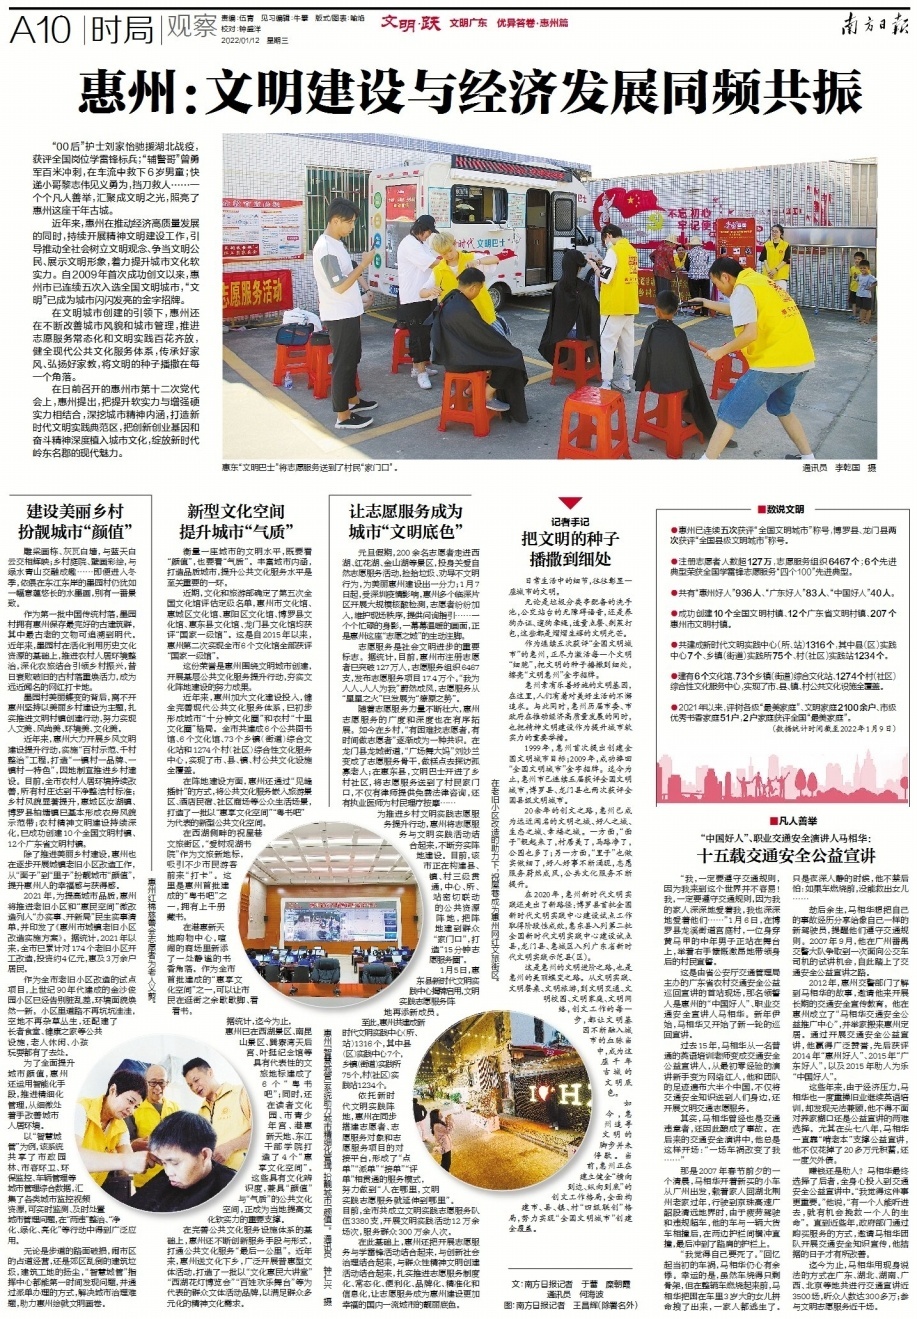 1月12日南方日报A10版聚焦惠州文明建设。